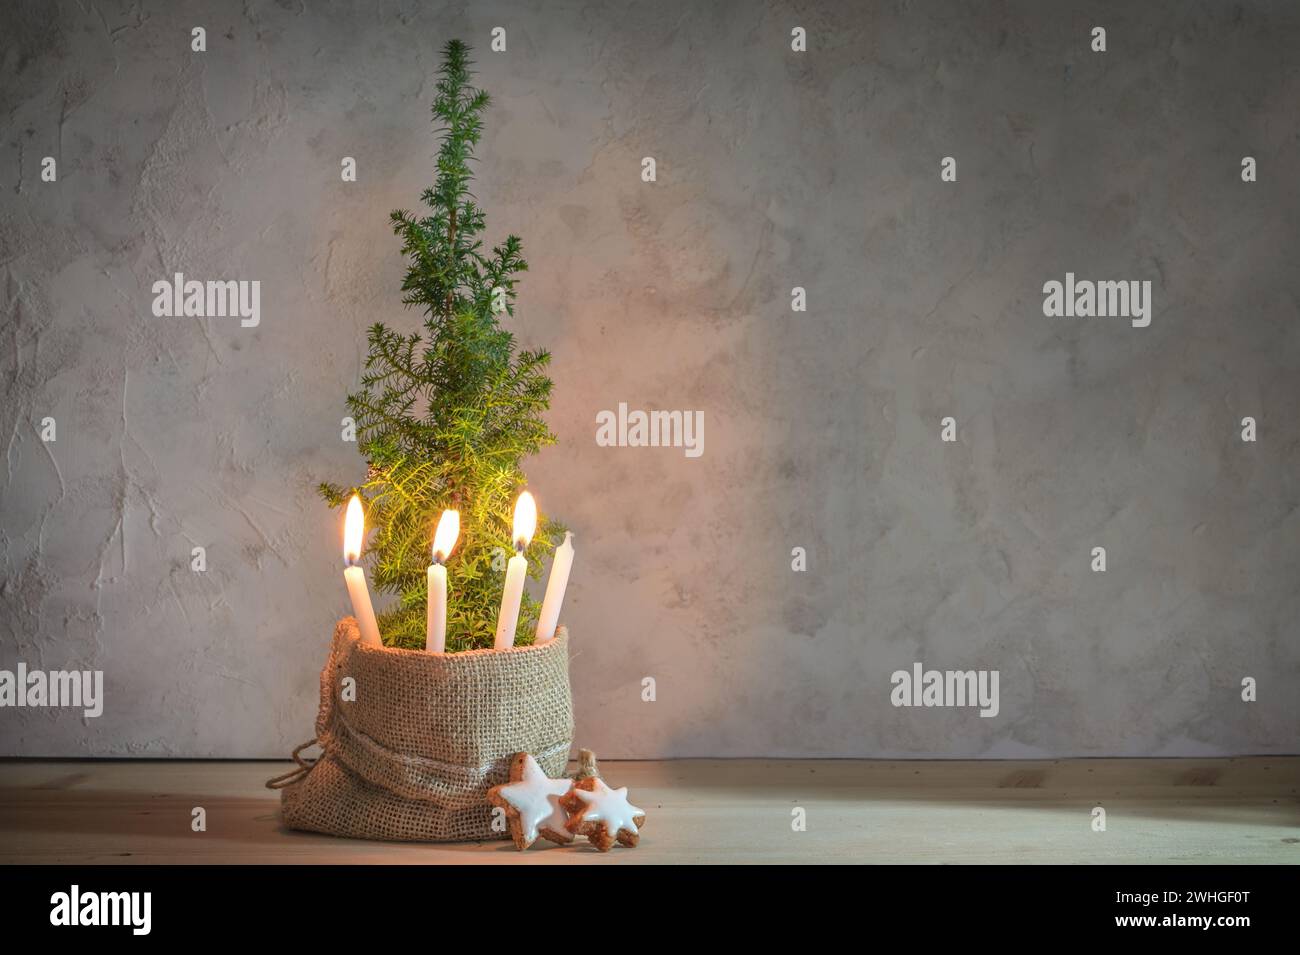 Alternativer zweiter Adventskranz, drei Kerzen mit Flamme auf einer kleinen Nadelpflanze als Weihnachtsbaumsymbol, große Kopie sp Stockfoto